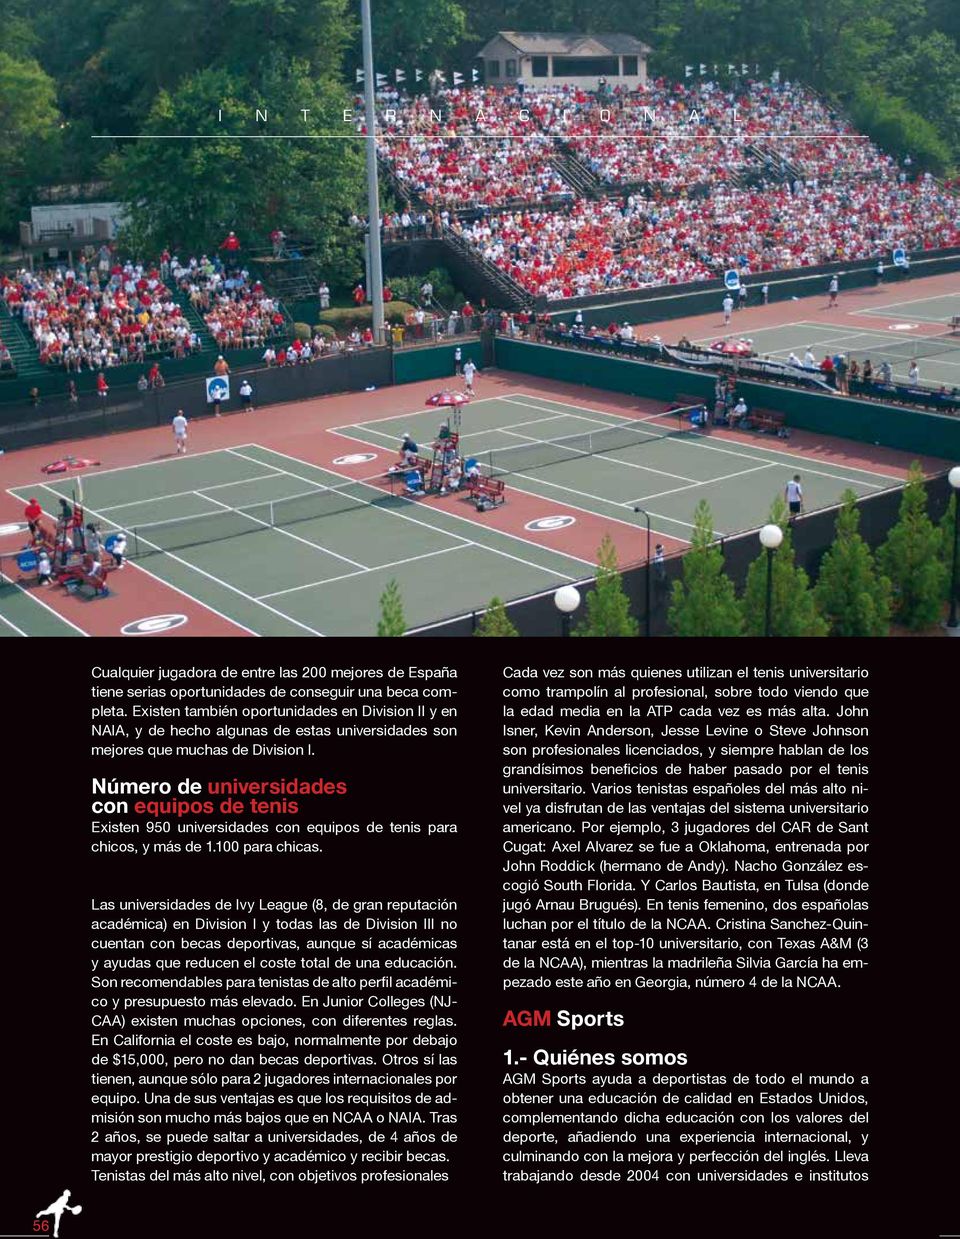 Número de universidades con equipos de tenis Existen 950 universidades con equipos de tenis para chicos, y más de 1.100 para chicas.